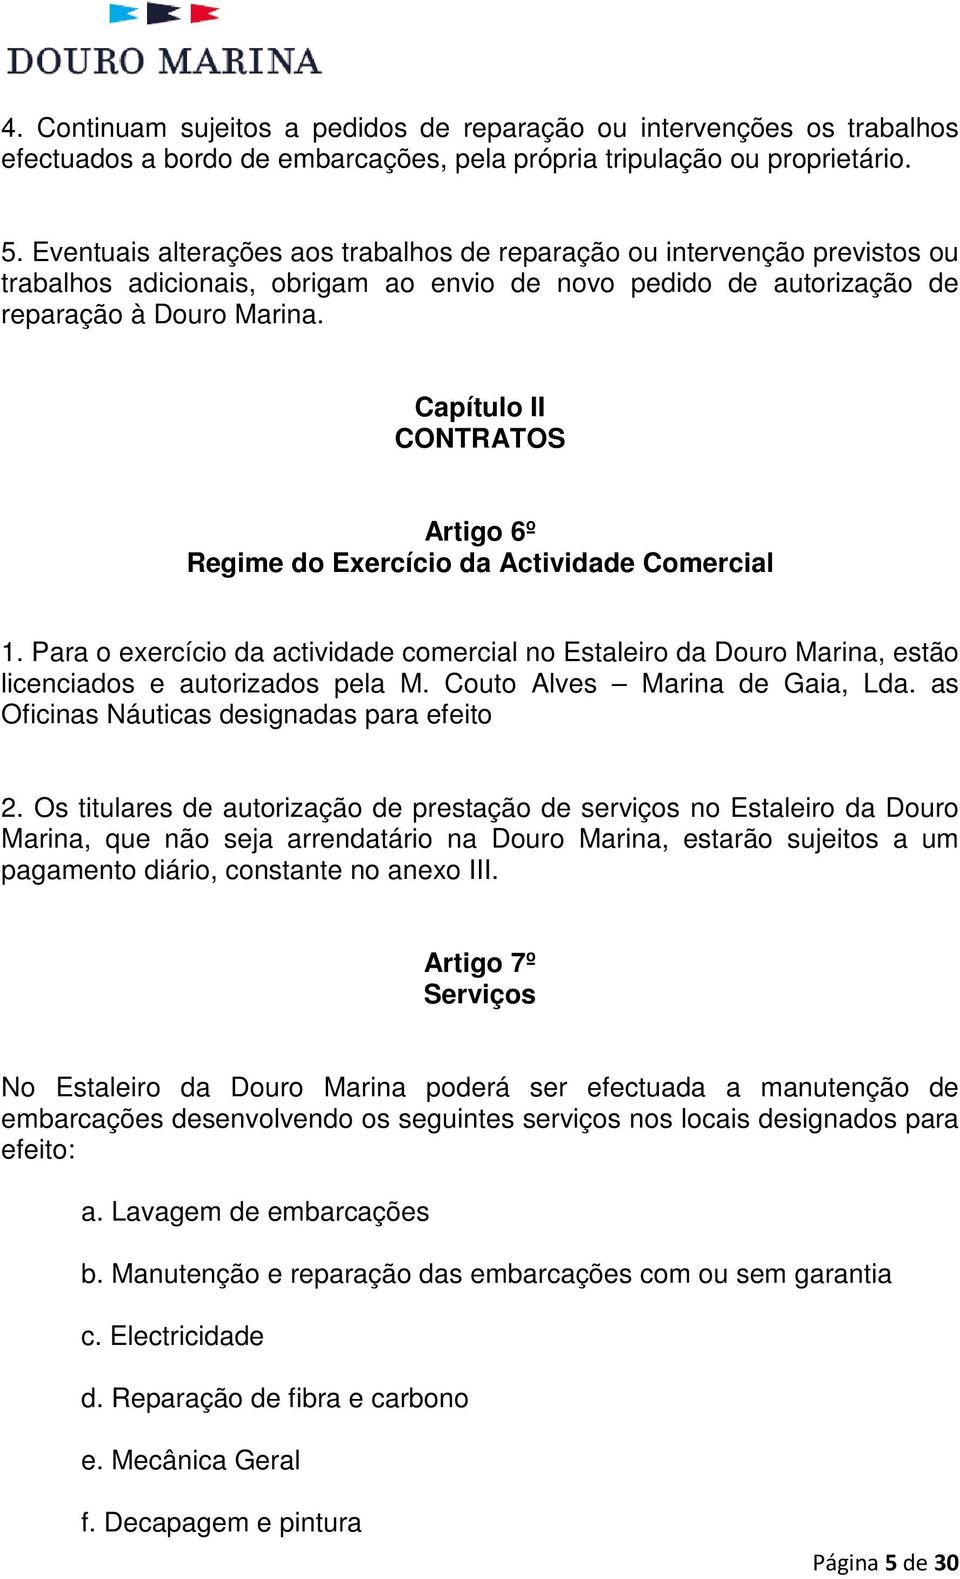 Capítulo II CONTRATOS Artigo 6º Regime do Exercício da Actividade Comercial 1. Para o exercício da actividade comercial no Estaleiro da Douro Marina, estão licenciados e autorizados pela M.